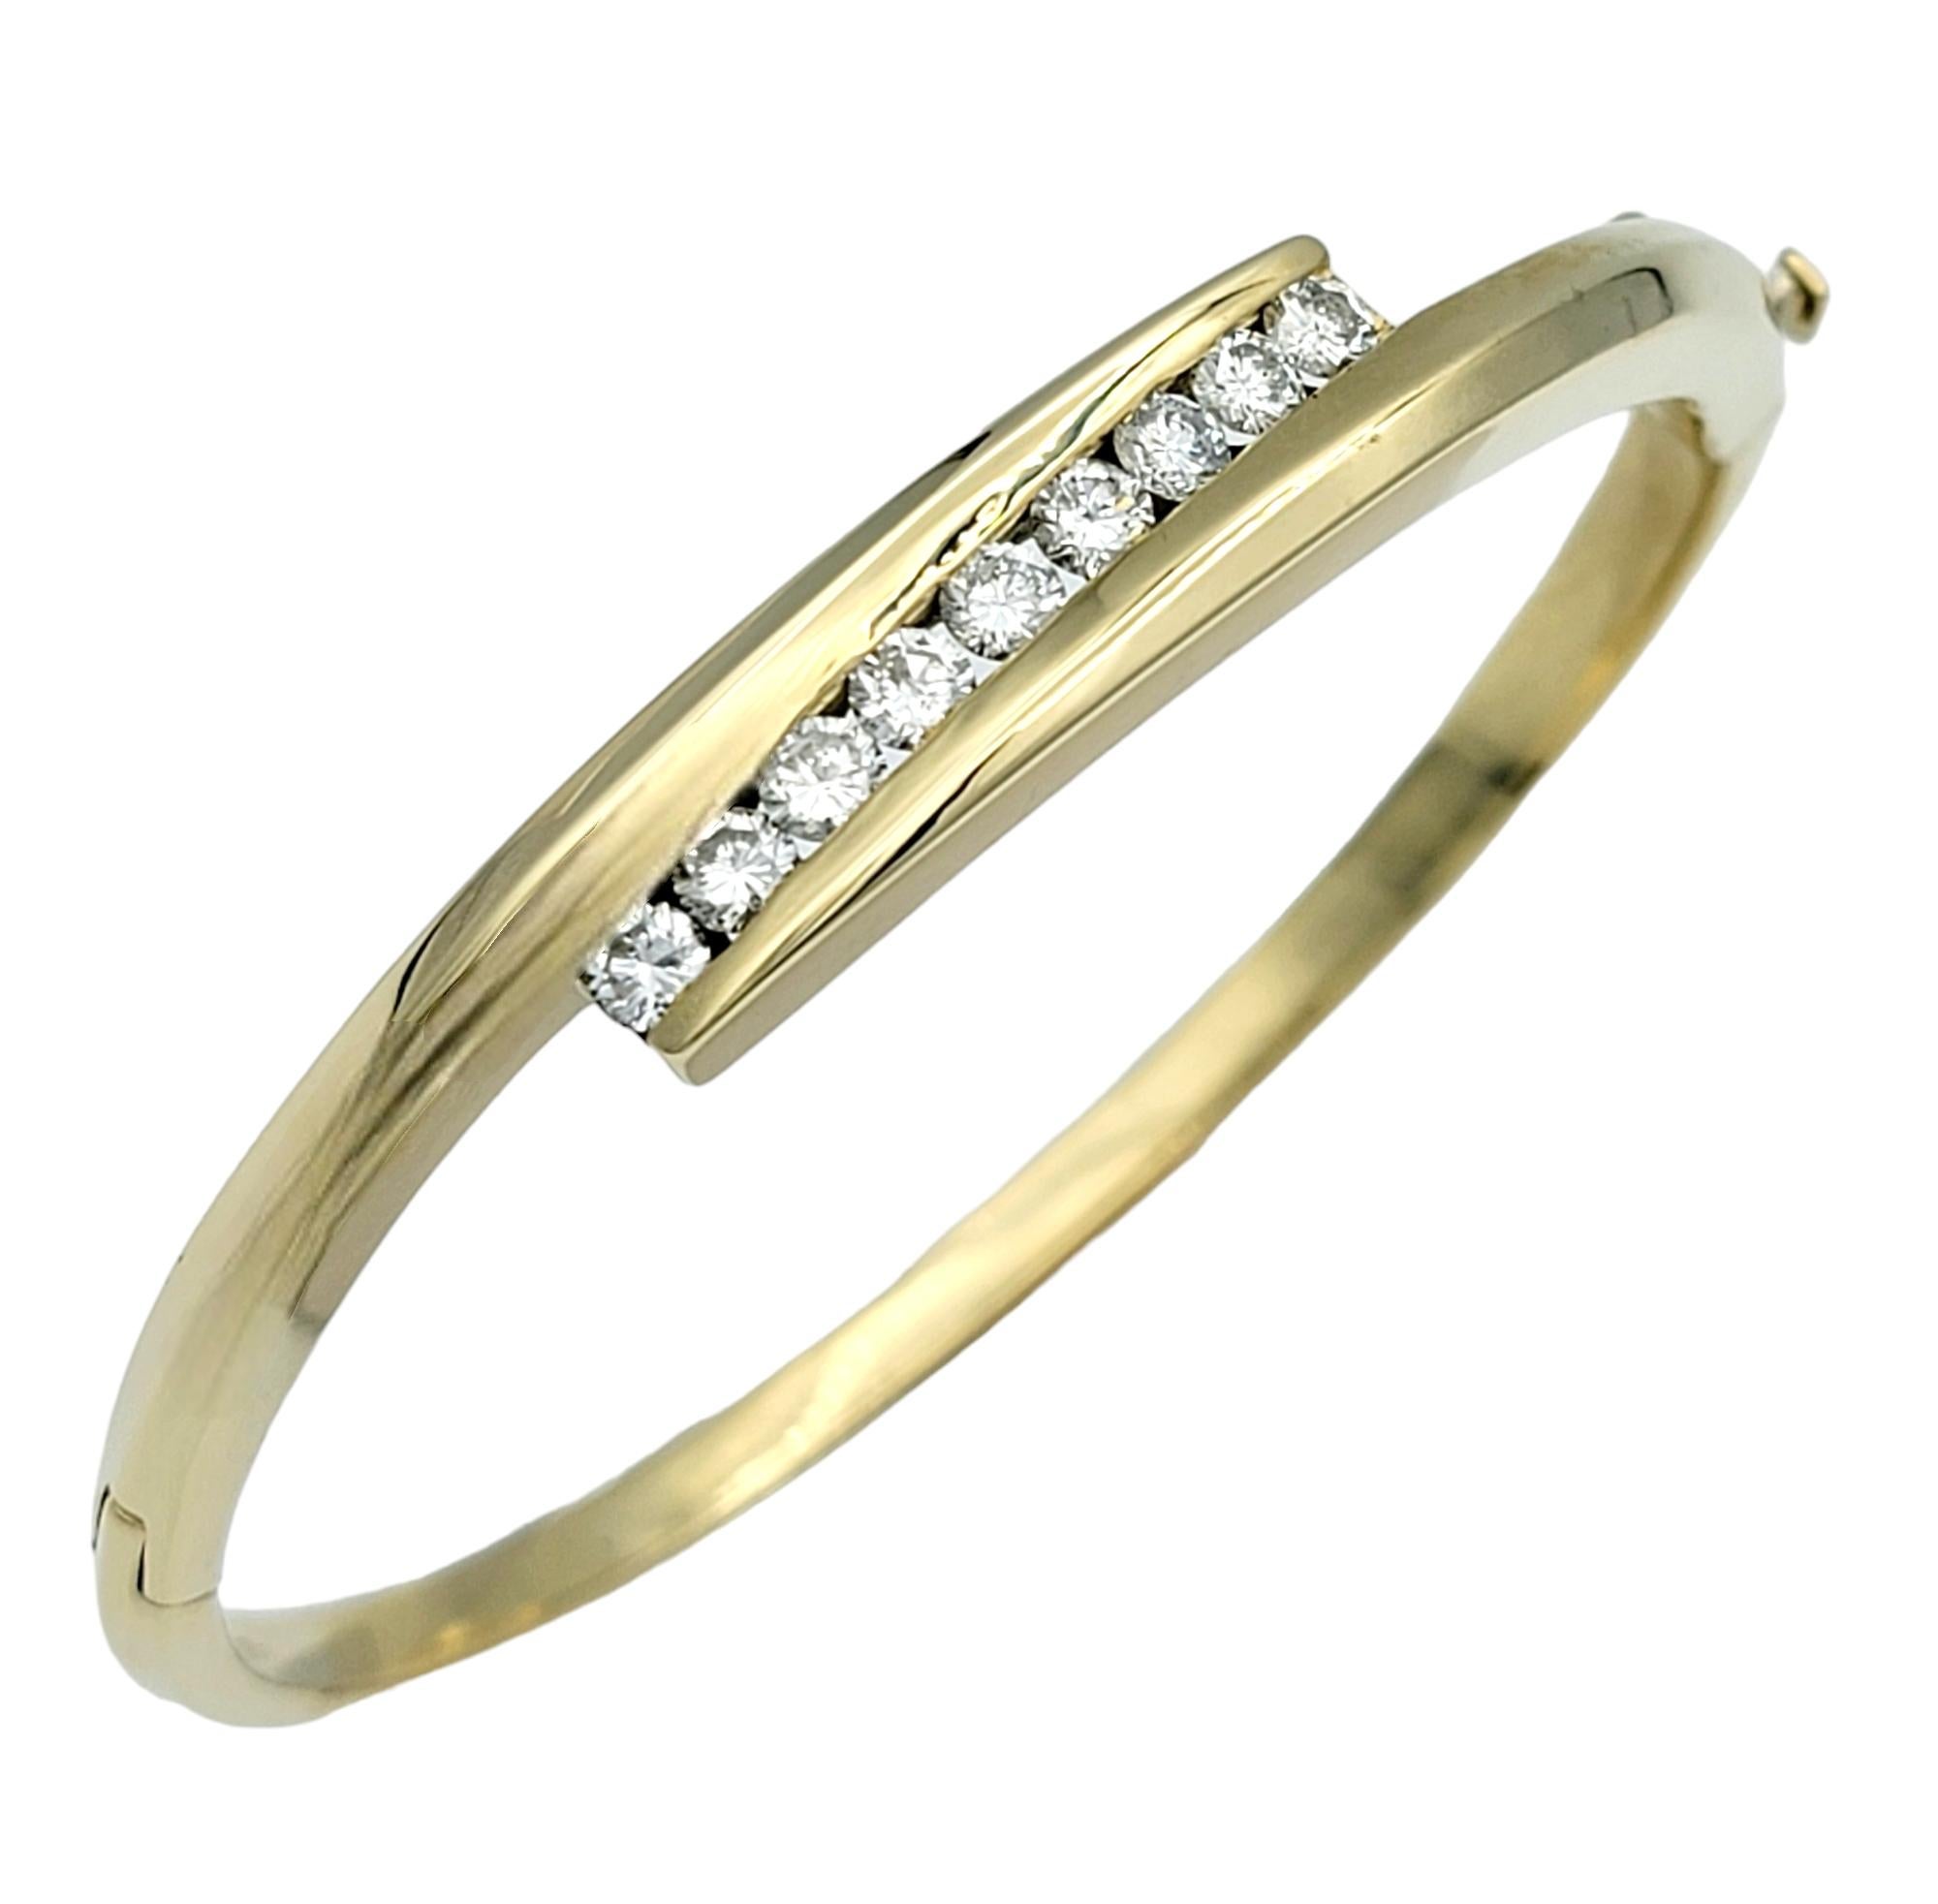 La circonférence intérieure de ce bracelet mesure 6,75 pouces et s'adaptera confortablement à un poignet de 6,5 pouces maximum. 

Ce bracelet à charnière de style bypass en diamant est un accessoire sophistiqué réalisé en or jaune 14 carats. Le